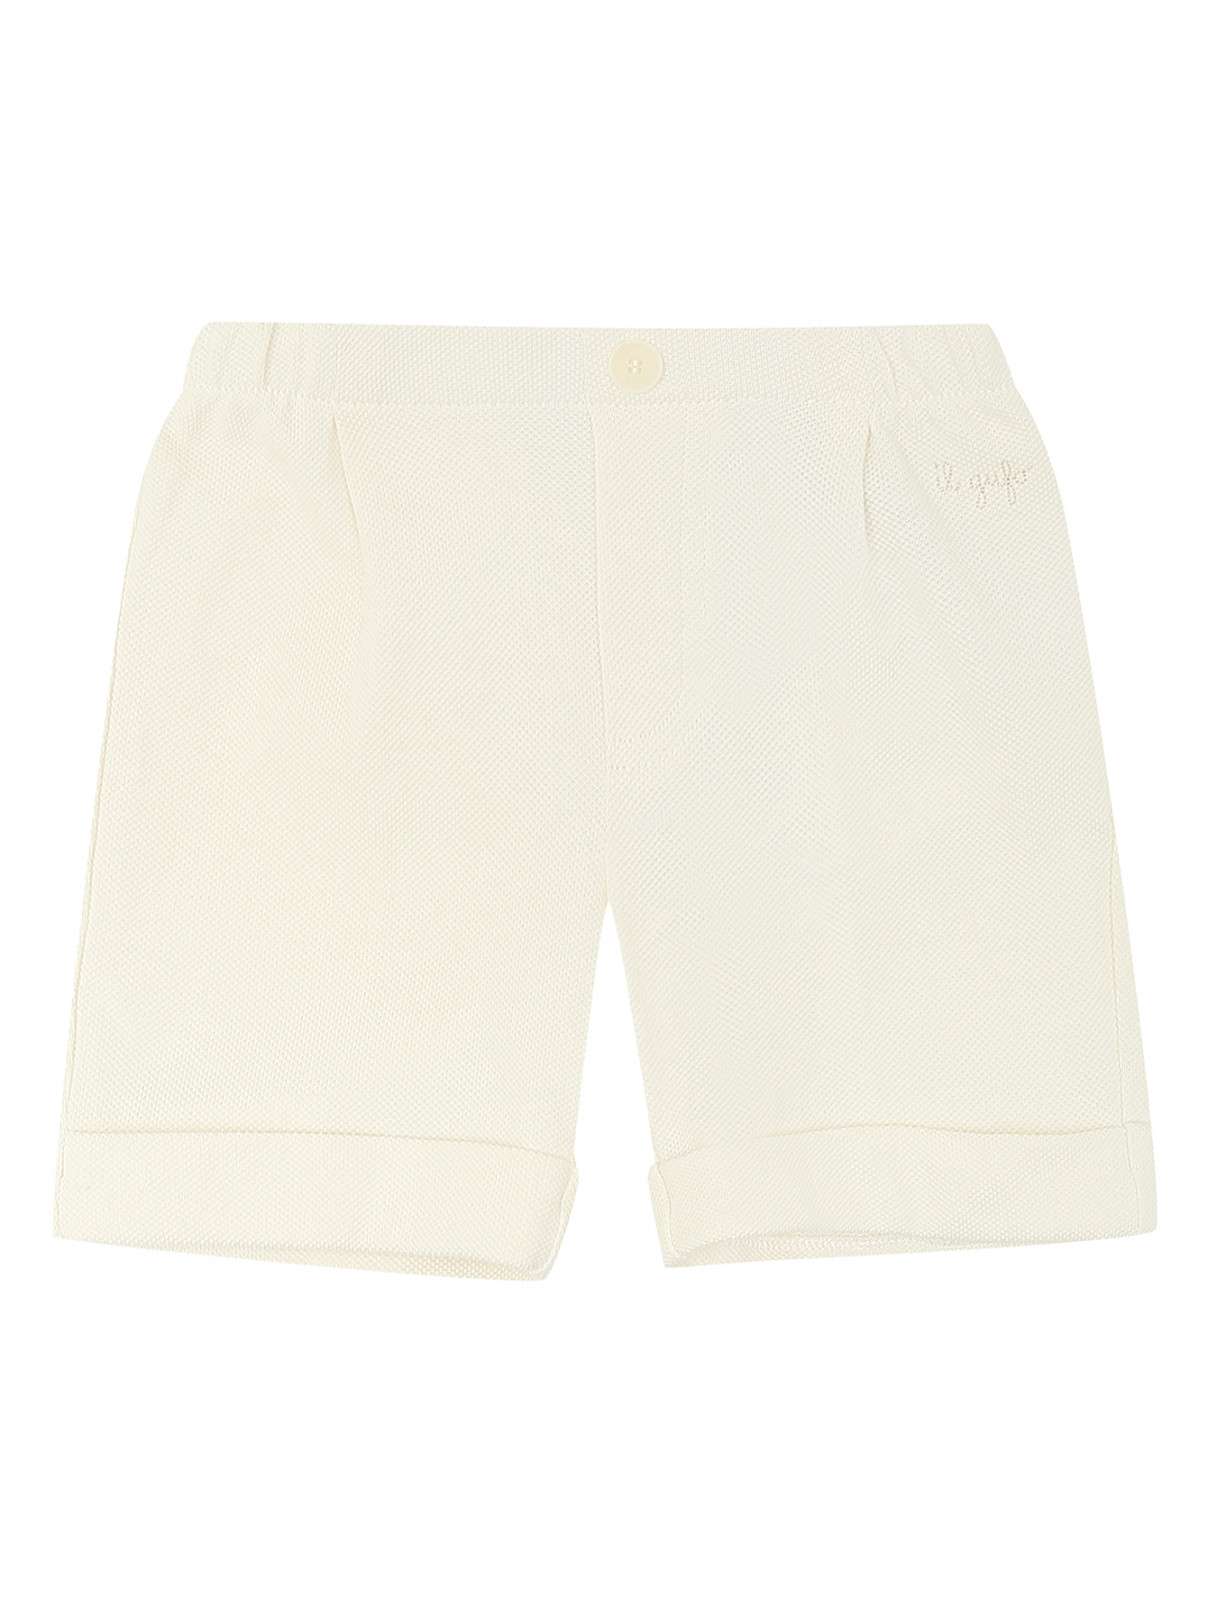 Хлопковые шорты на резинке Il Gufo  –  Общий вид  – Цвет:  Белый